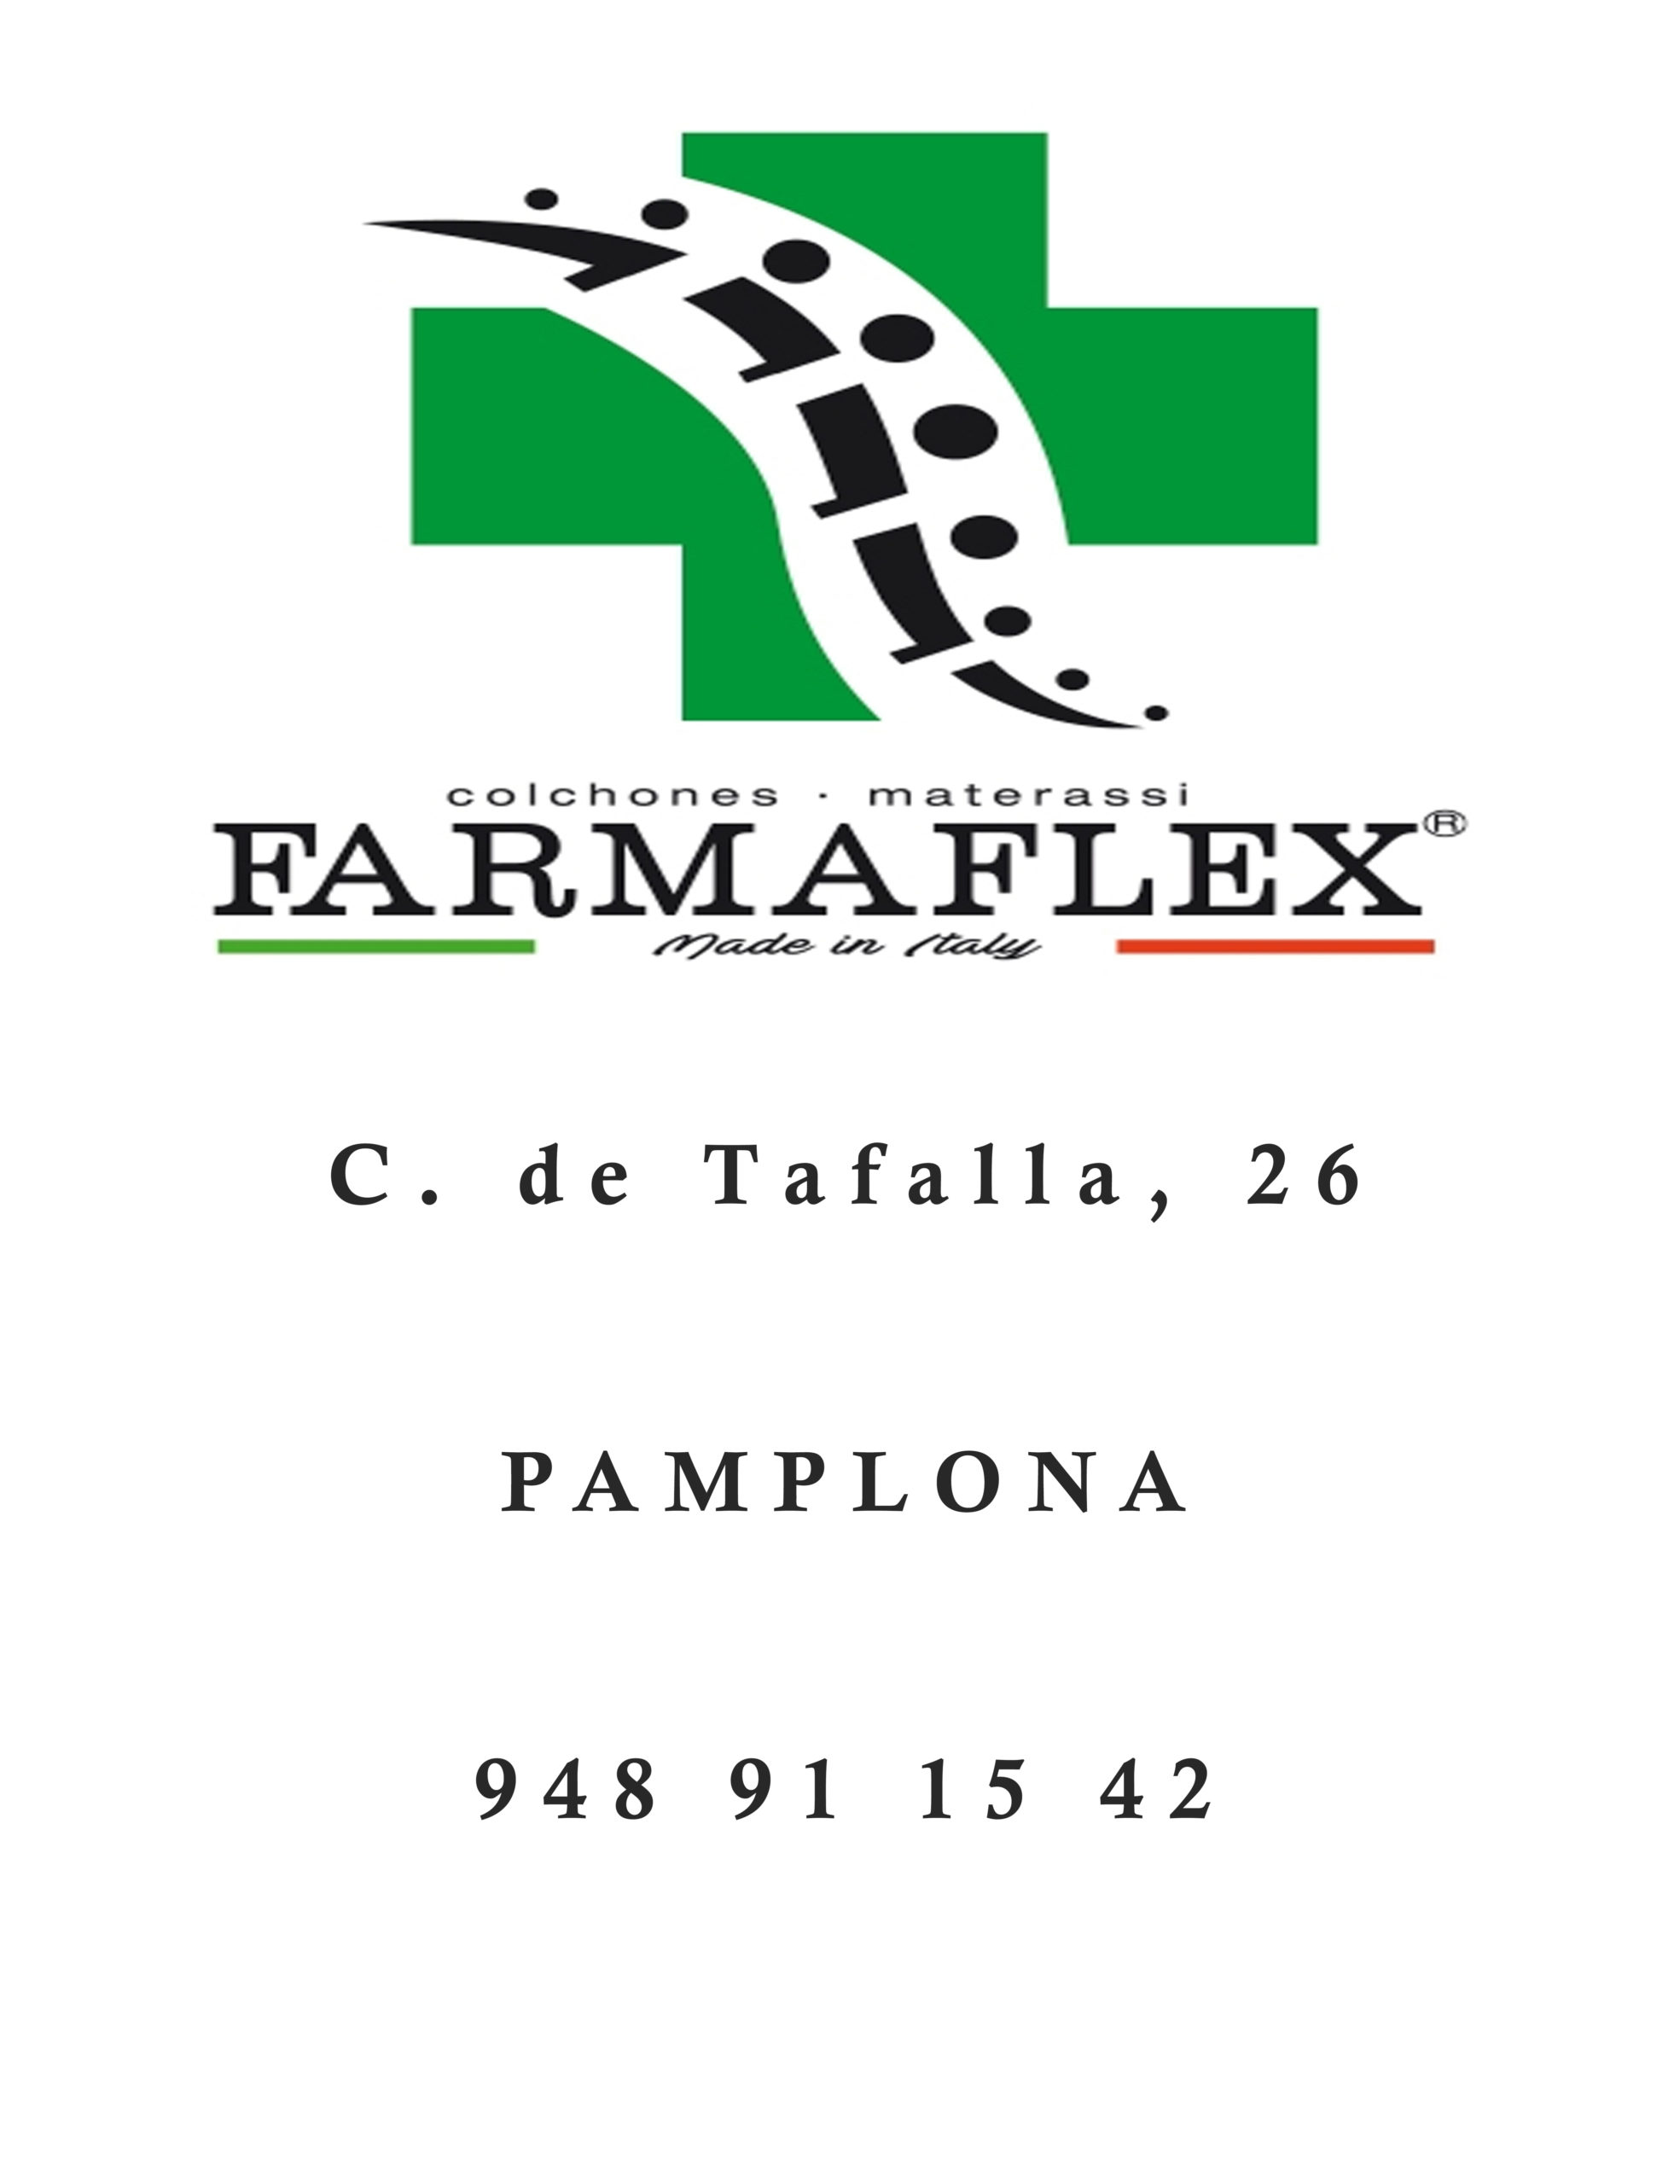 FarmaFlex